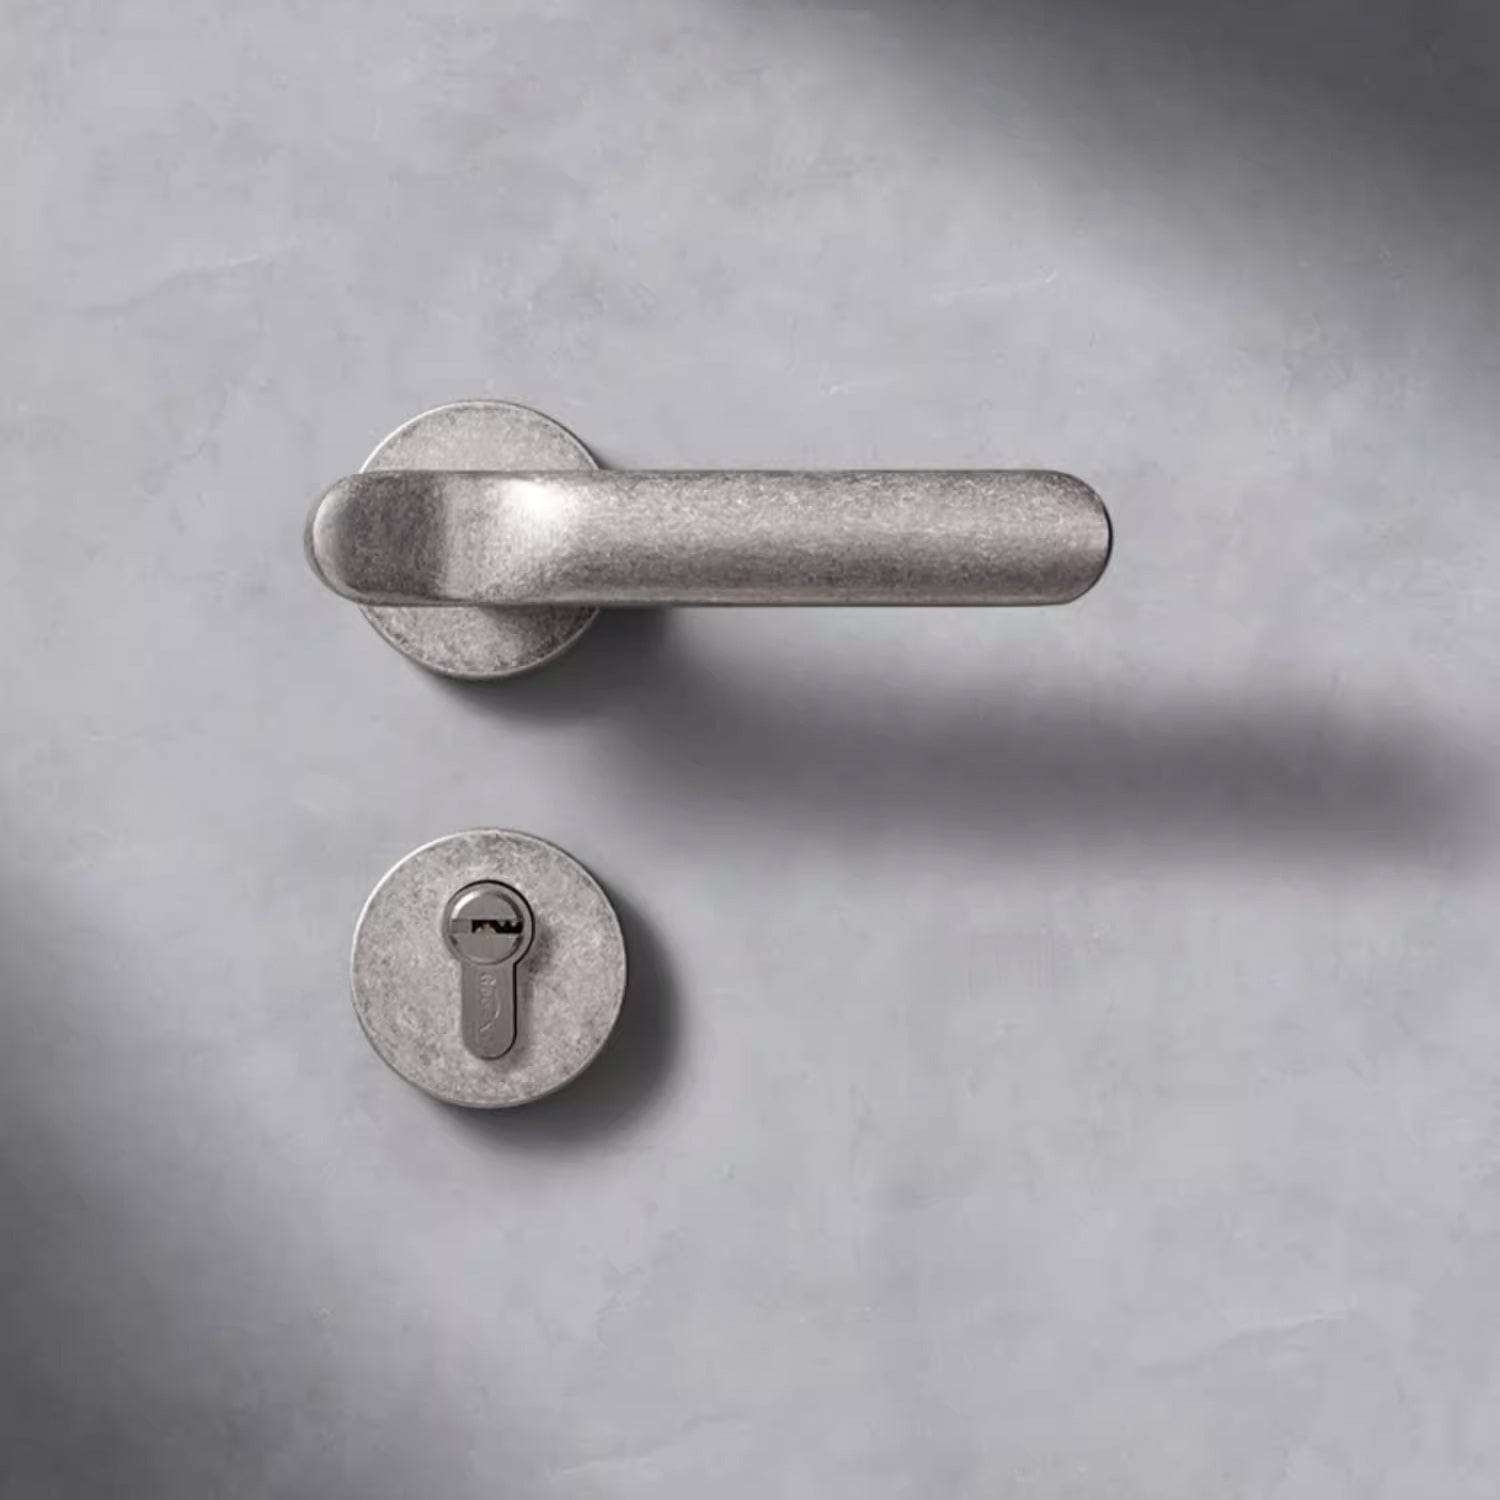 Goo-Ki Industrial Style Retro Door Handle Home Security Lock Mute Door Lock